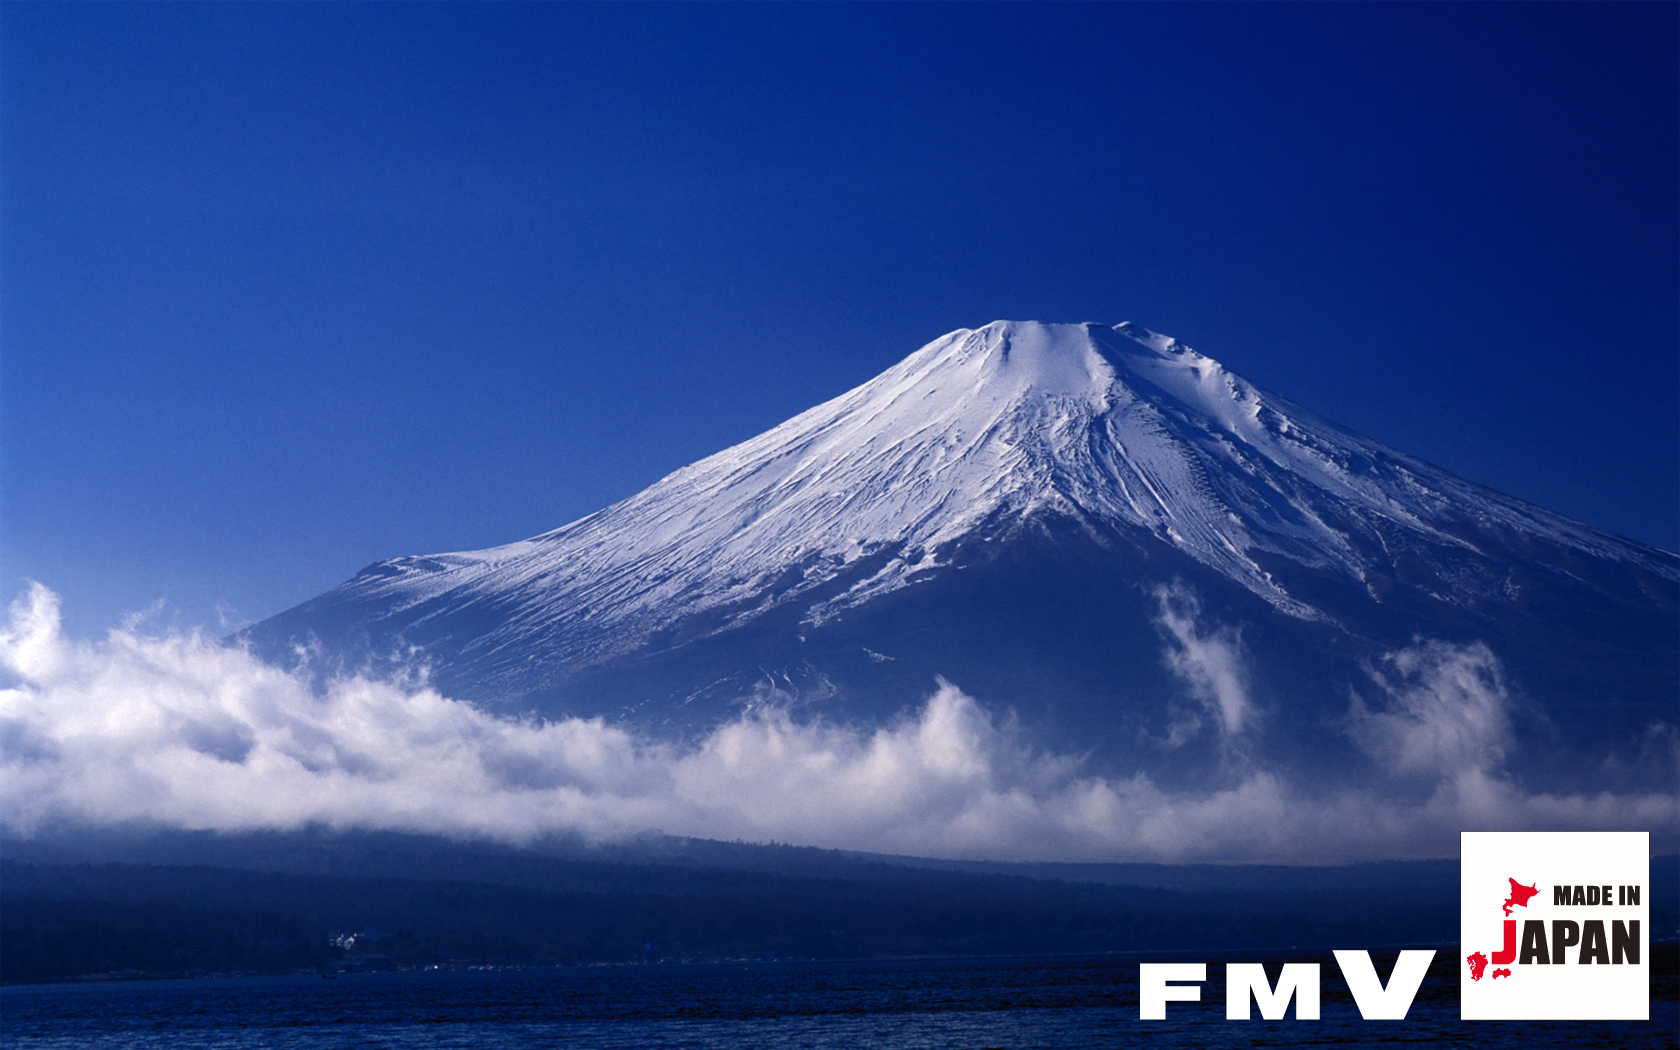 今までに発表した主な製品 Made In Japan Fmvサポート 富士通